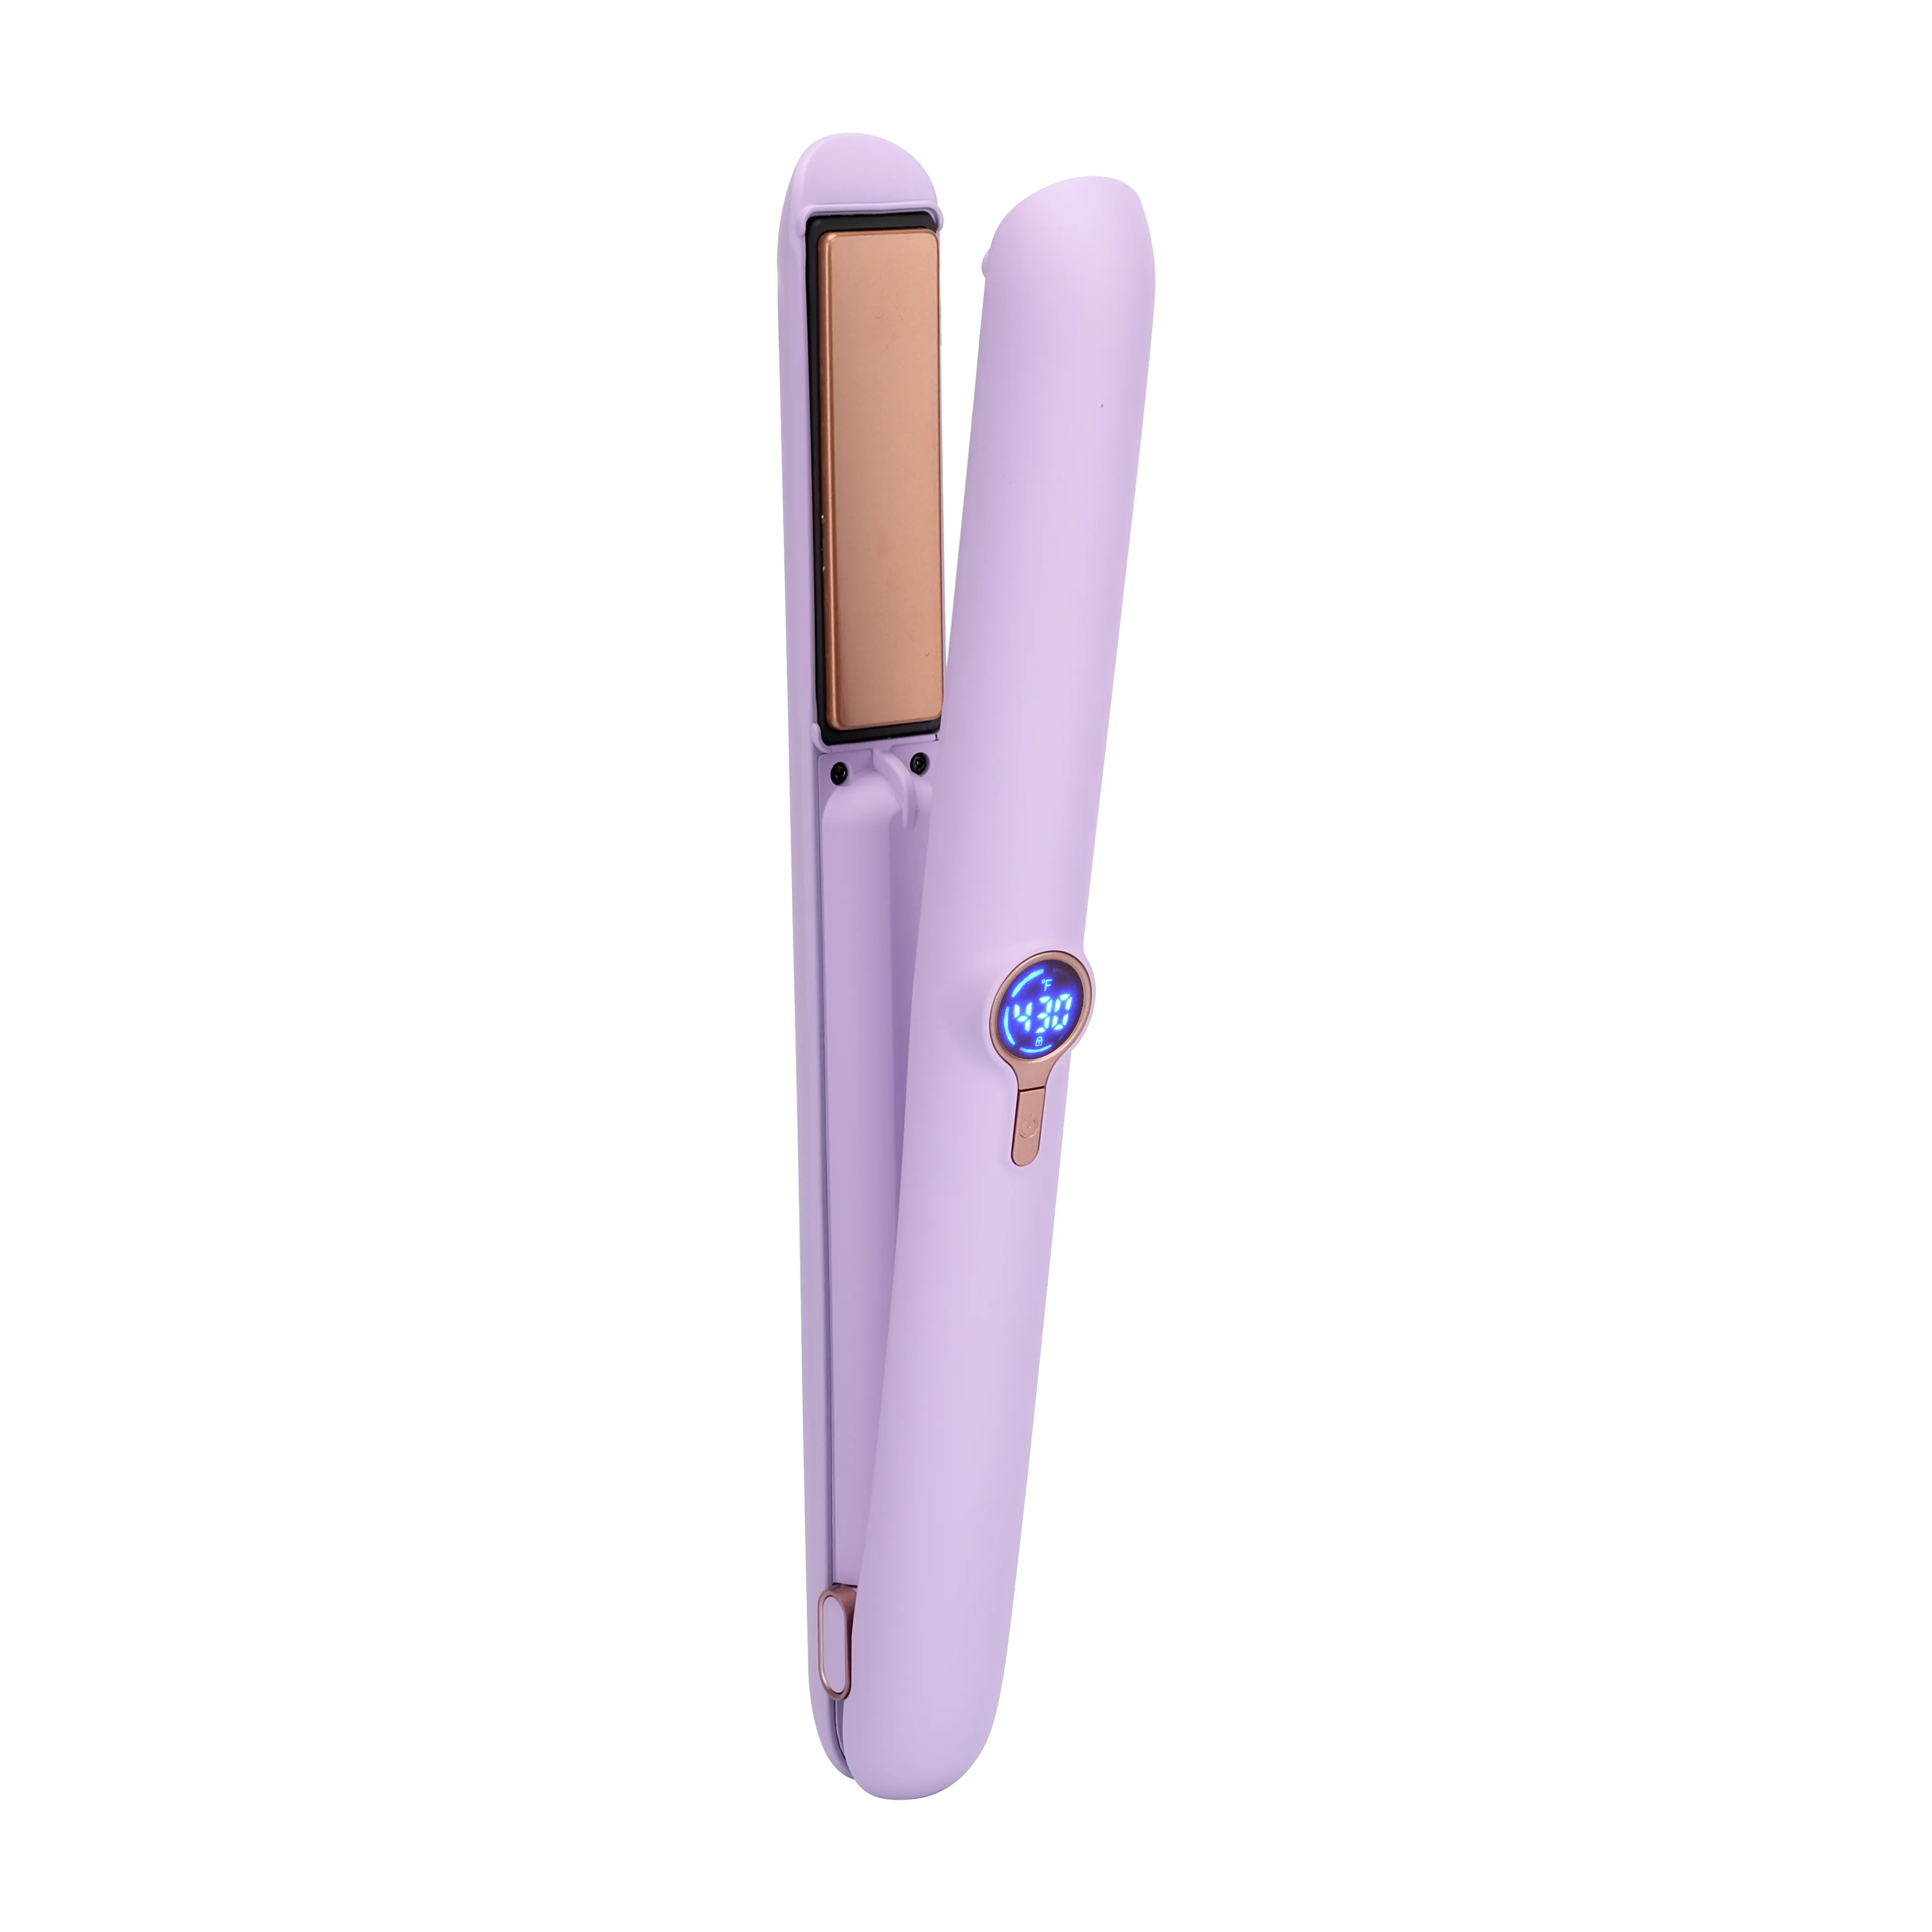 Neues 2-in-1-Haarstyling-Tool für Glätte isen USB Wiederauf ladbarer Haar glätter für Reisen und zu Hause